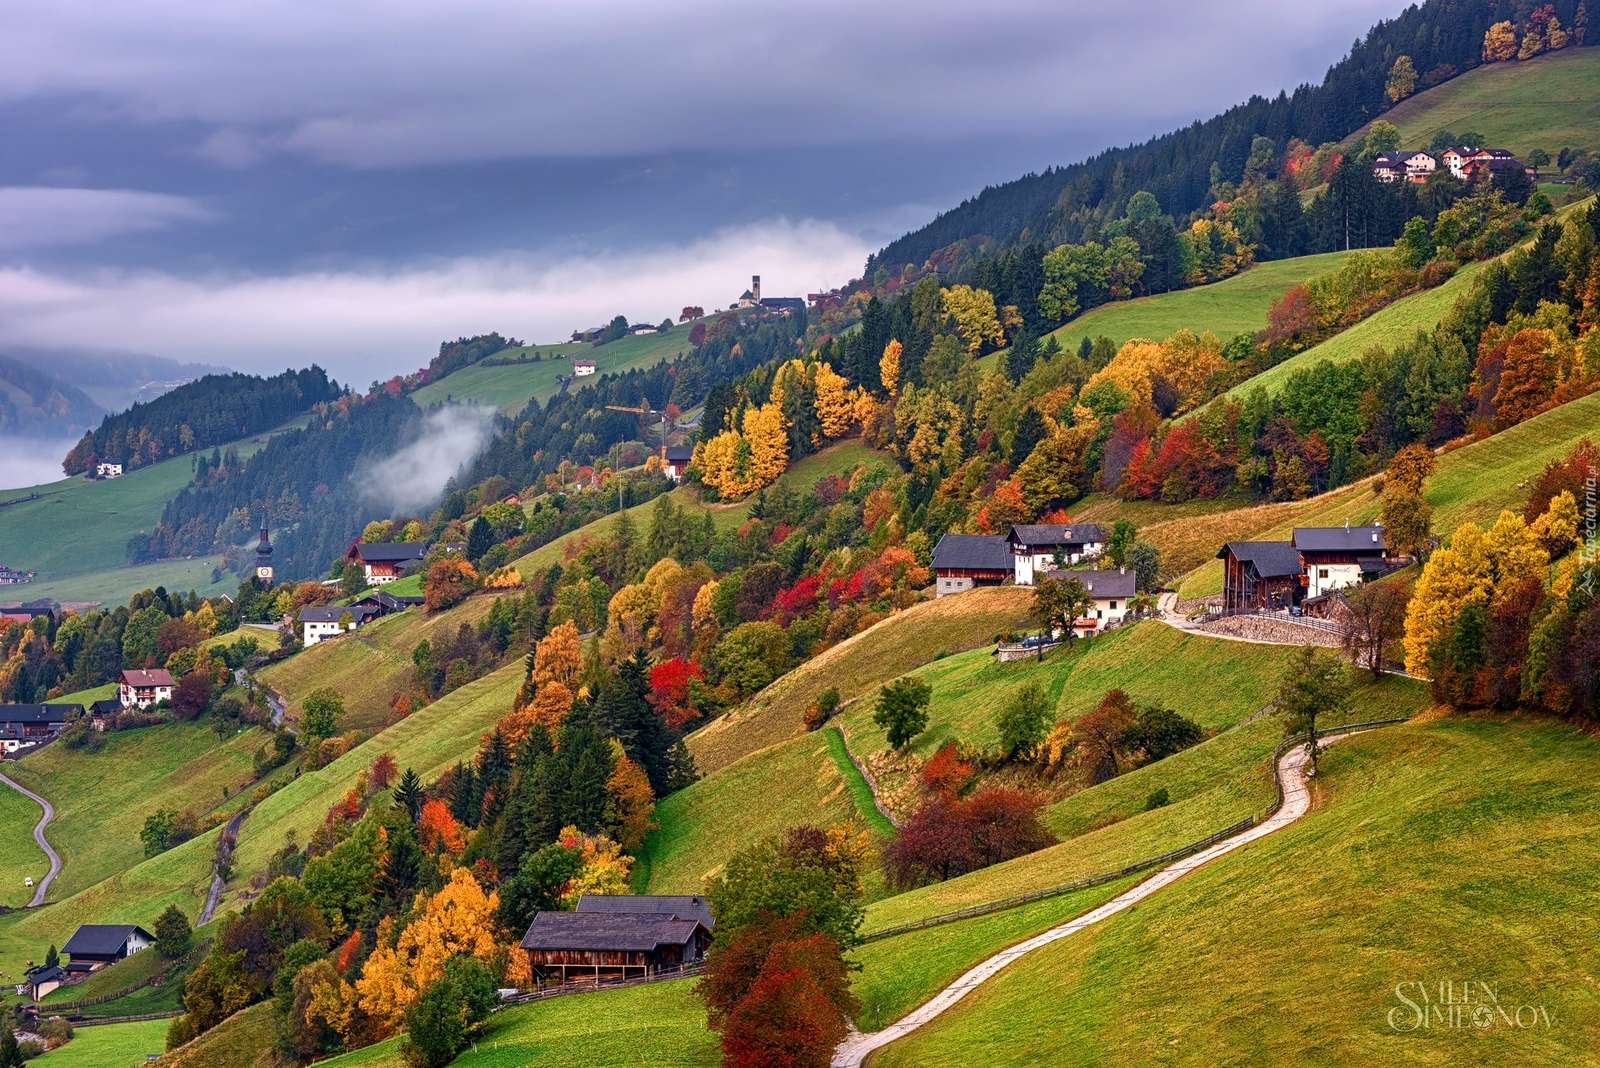 Herbst in den Bergen. Online-Puzzle